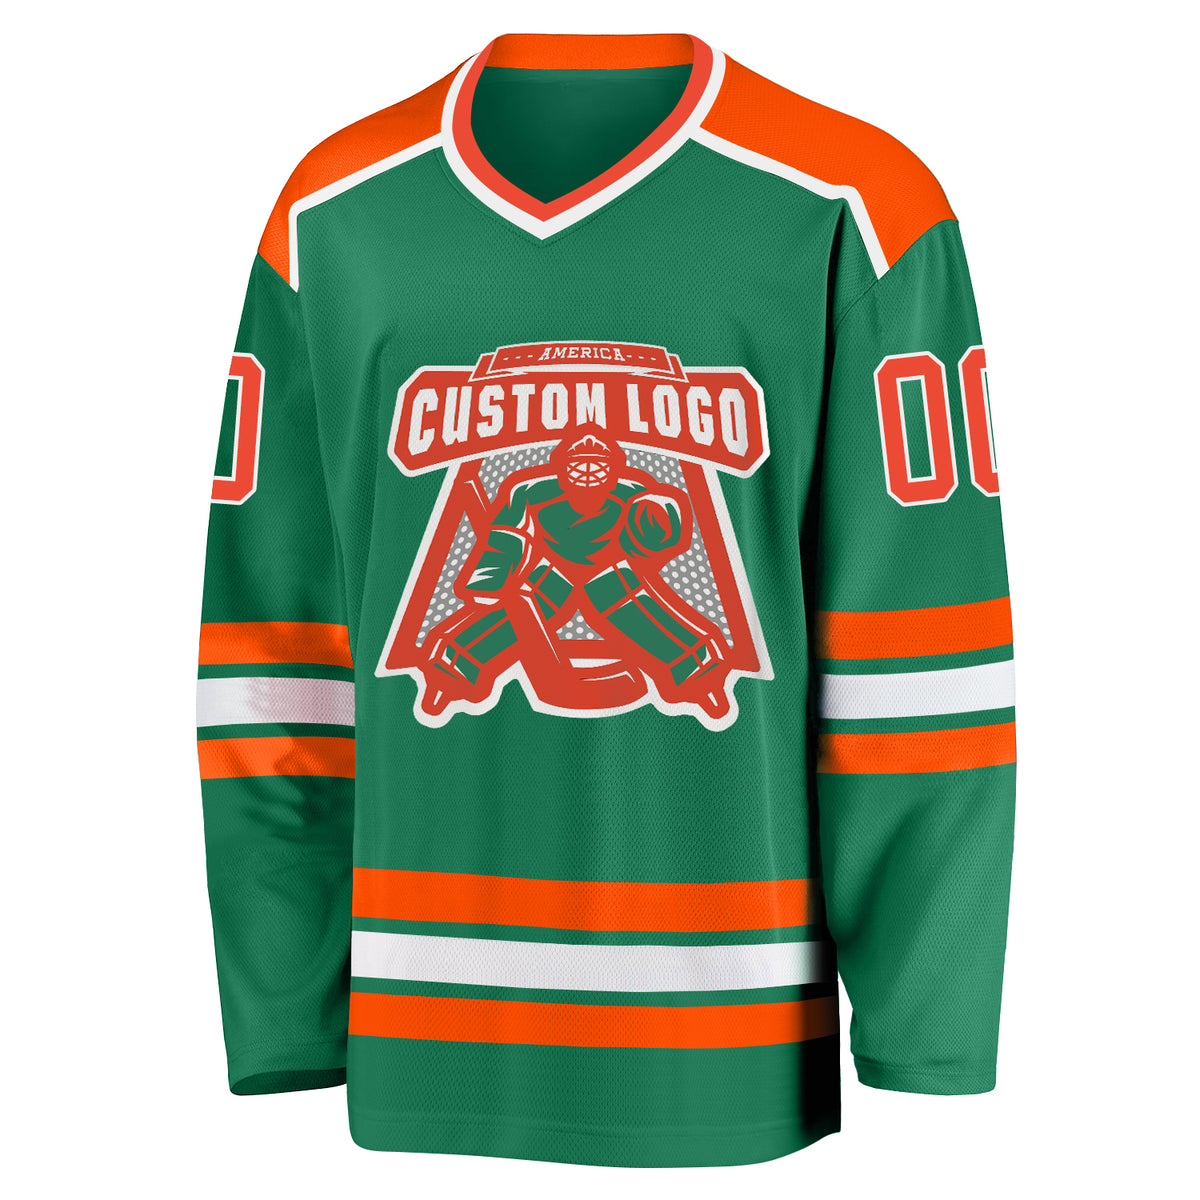 Custom Anaheim Ducks Hockey Jersey Name and Number White 1